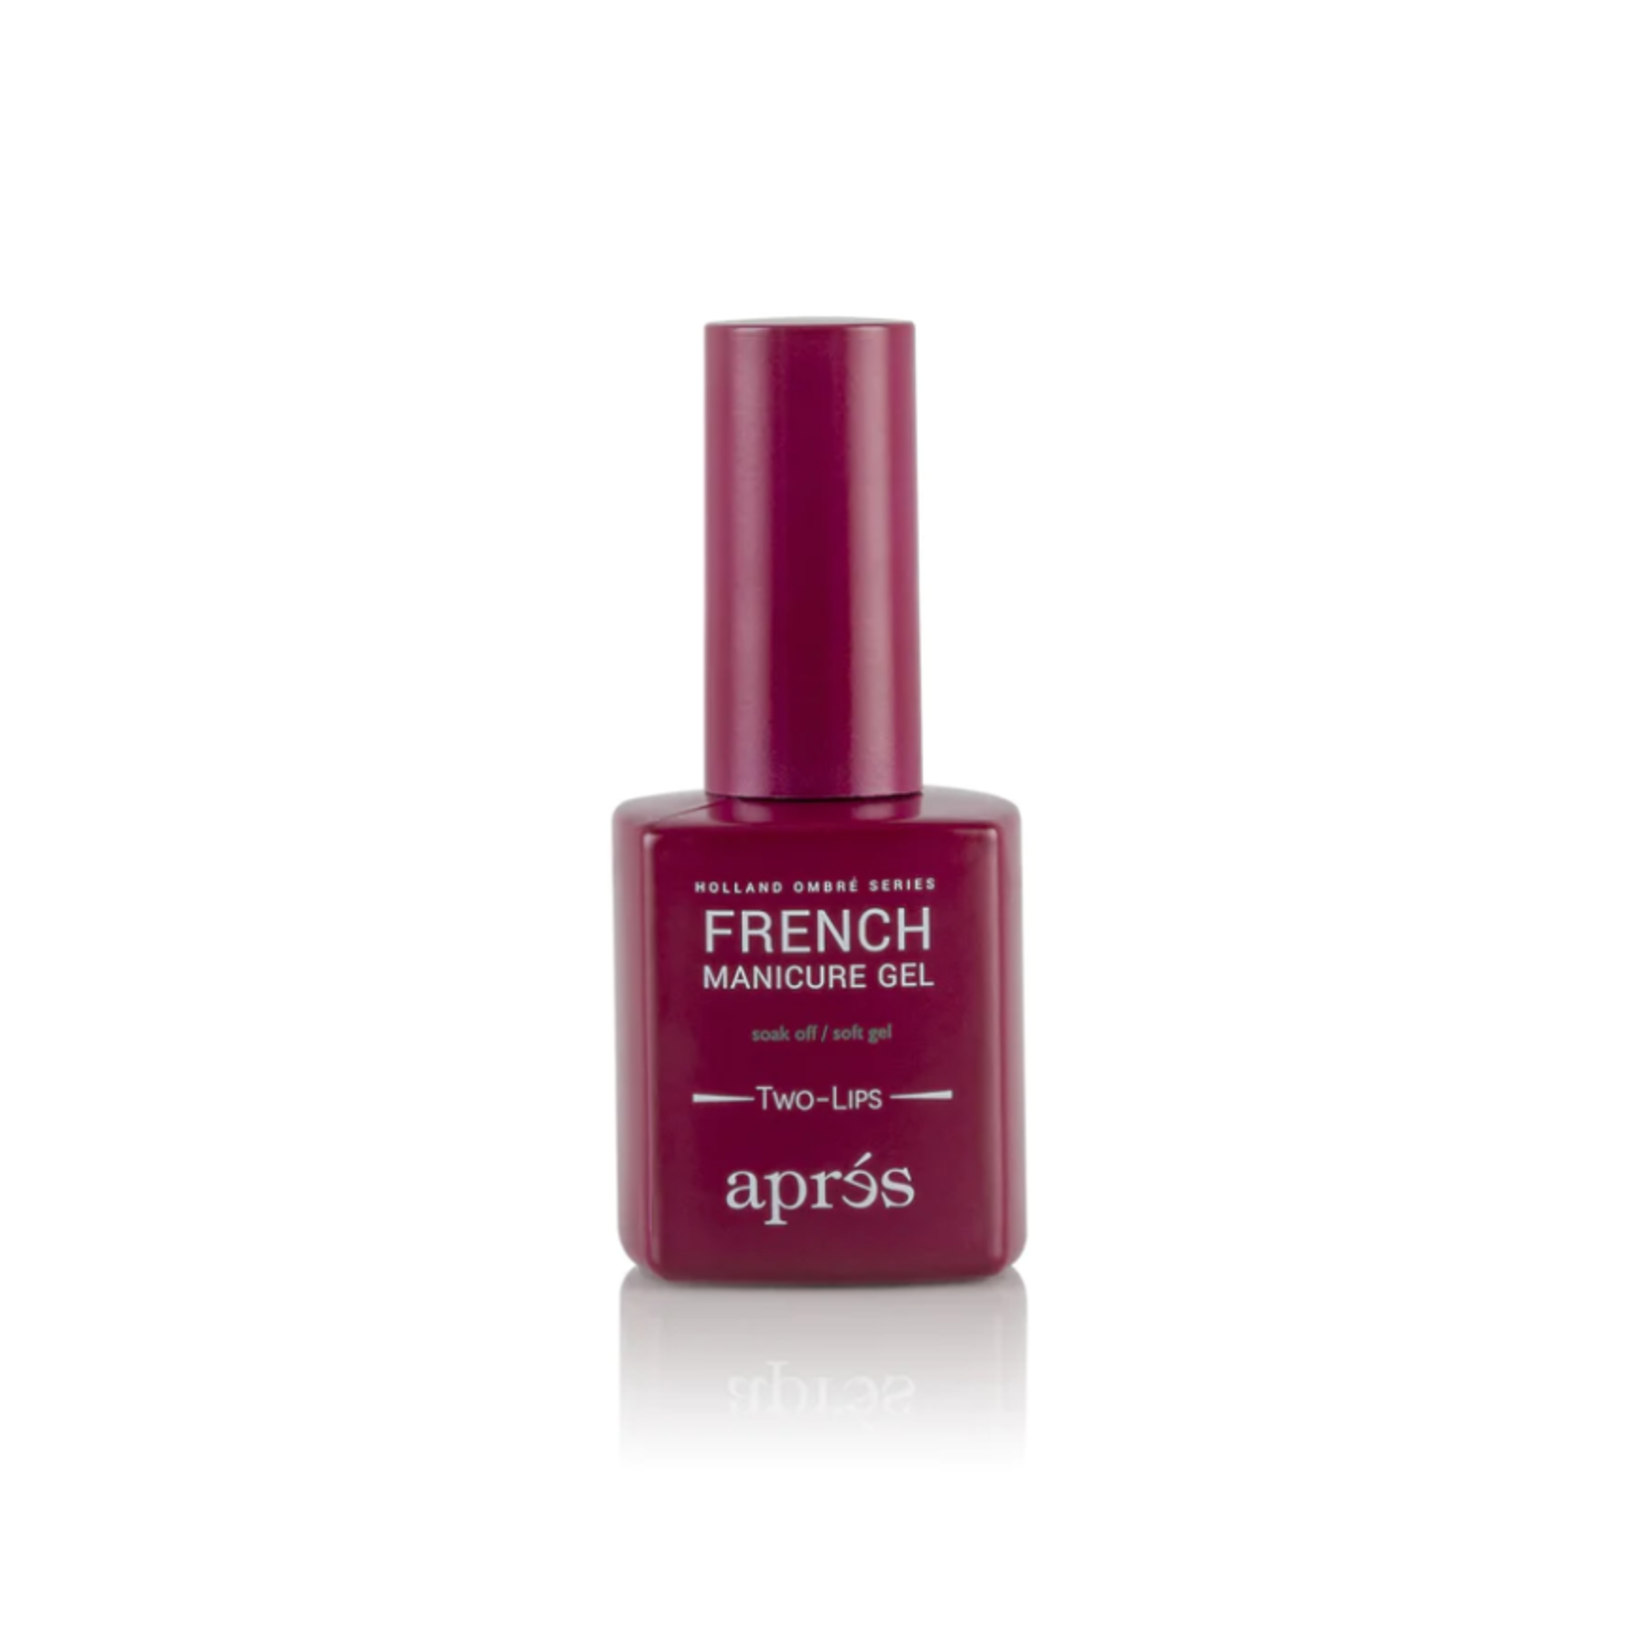 Apres Apres - French Manicure Gel - 137 Two-Lips - 0.5 oz